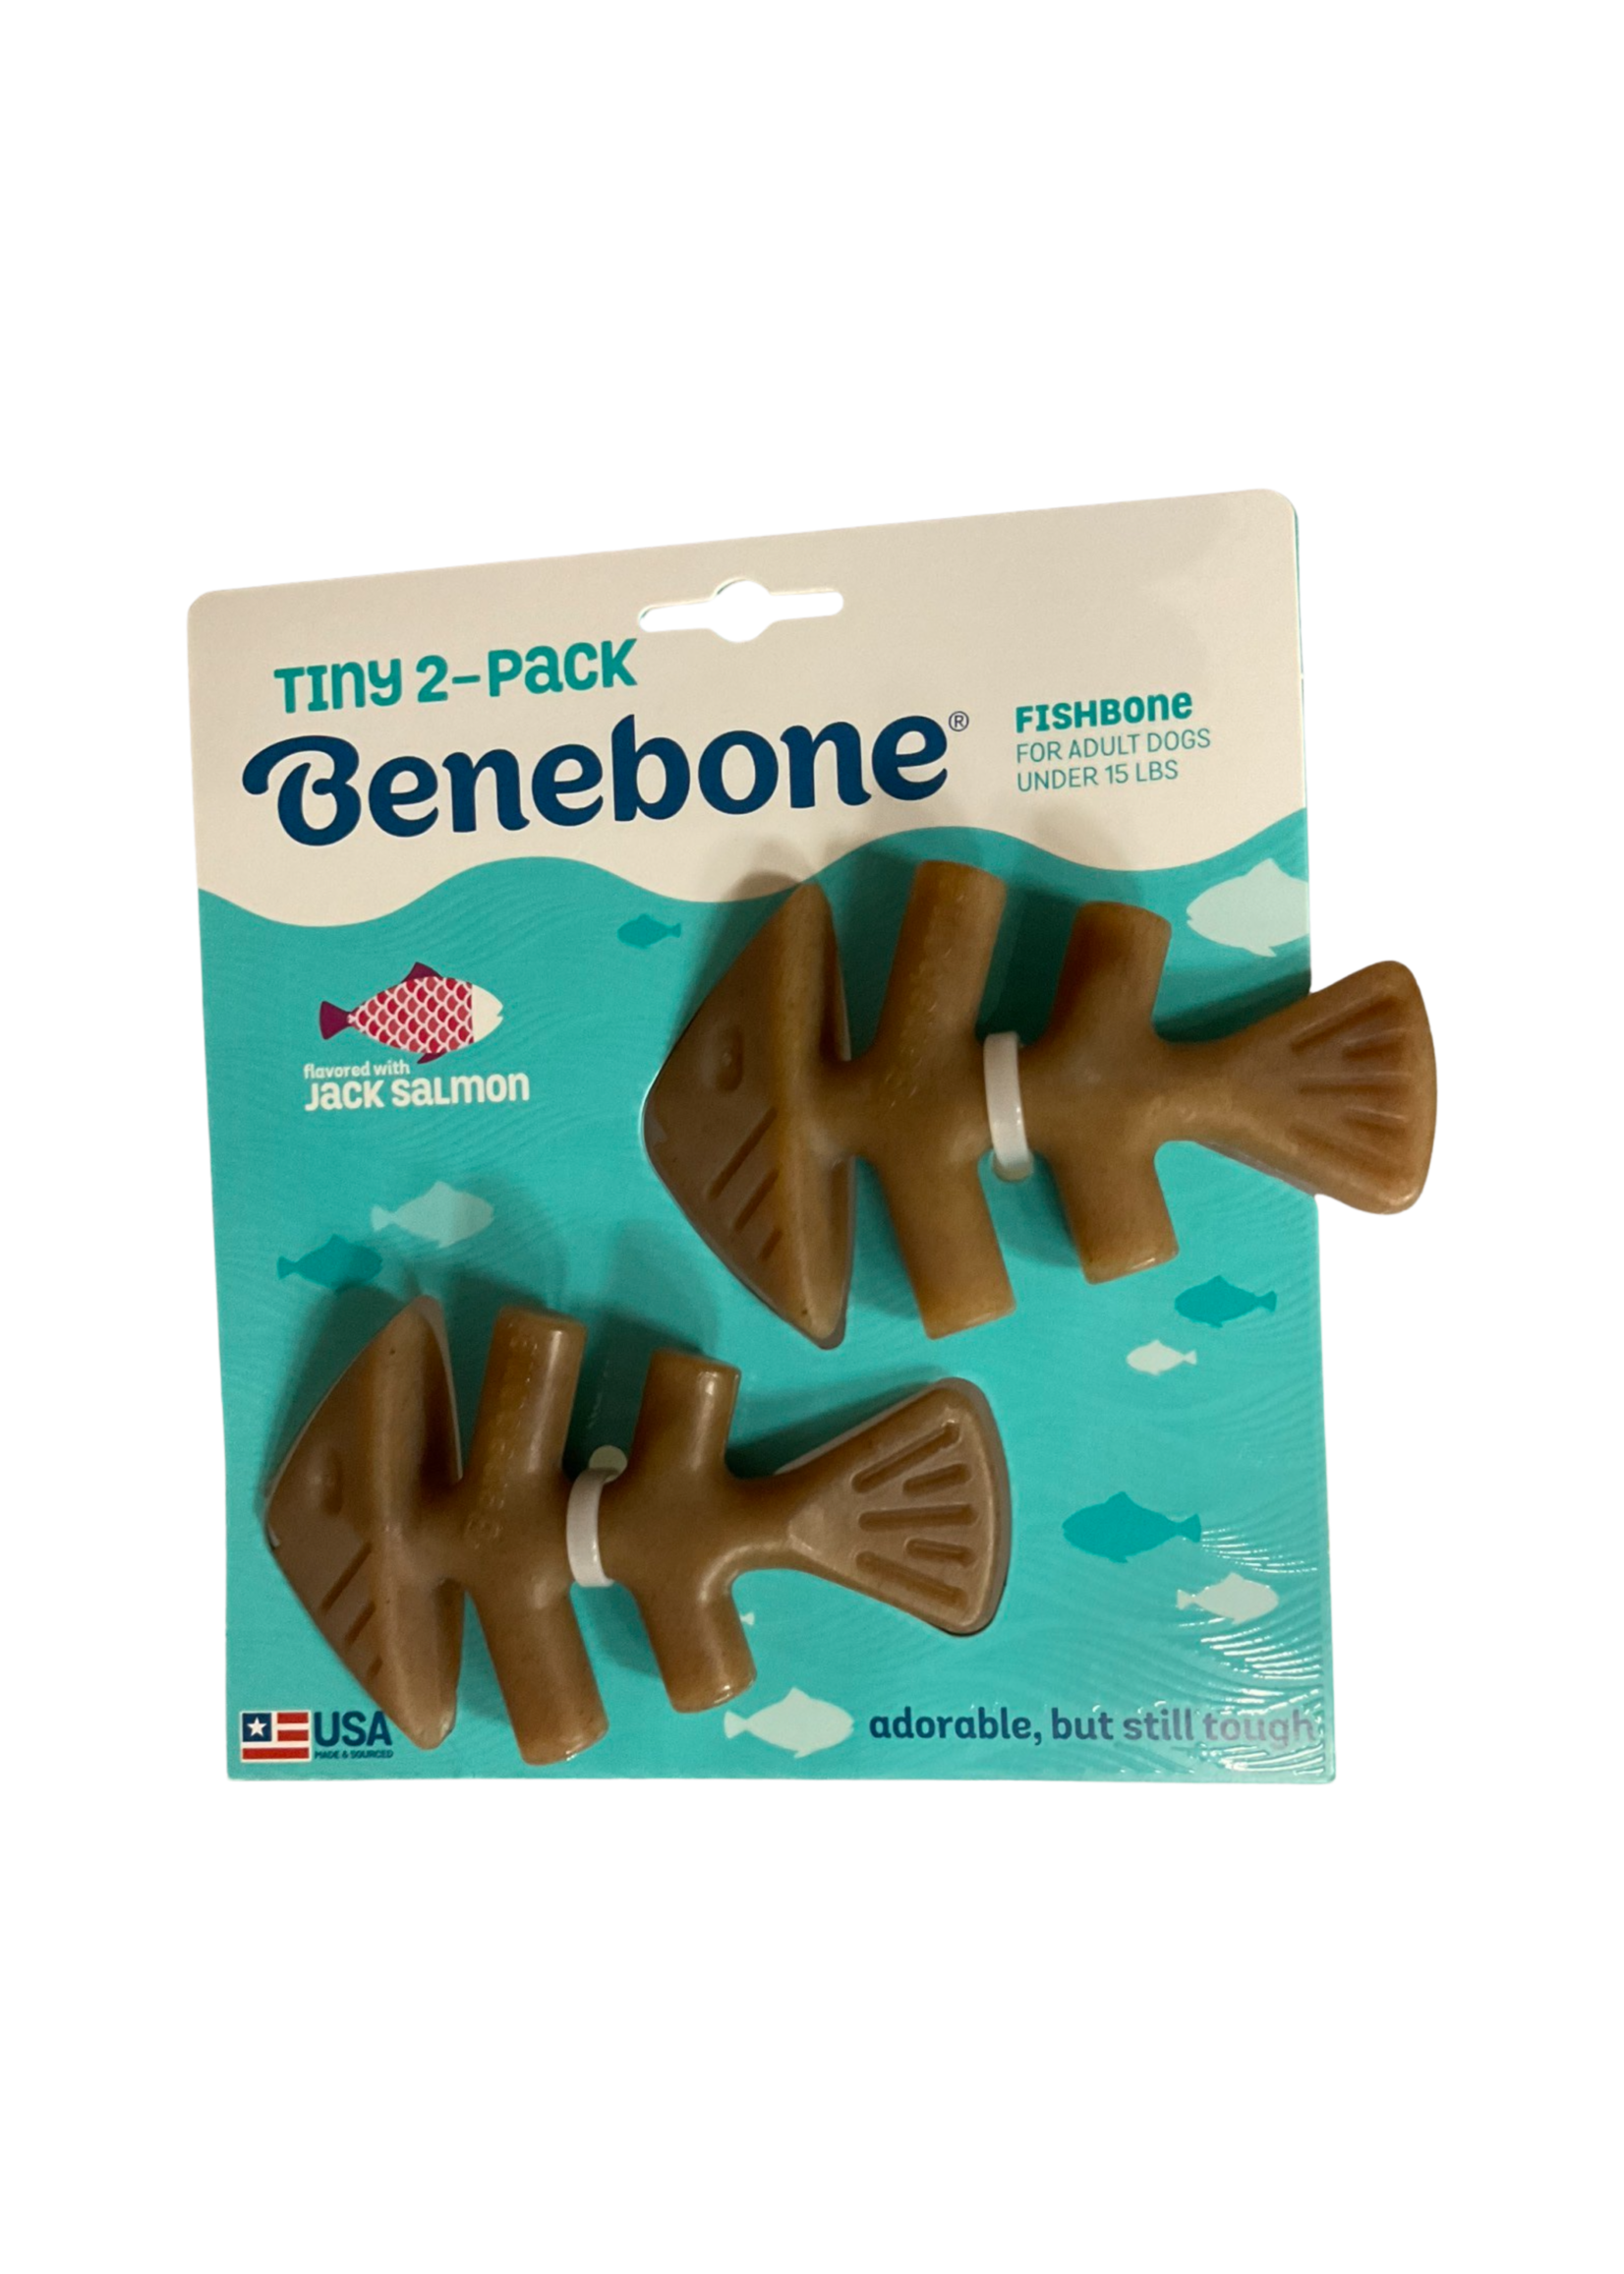 Benebone Tiny 2-Pack